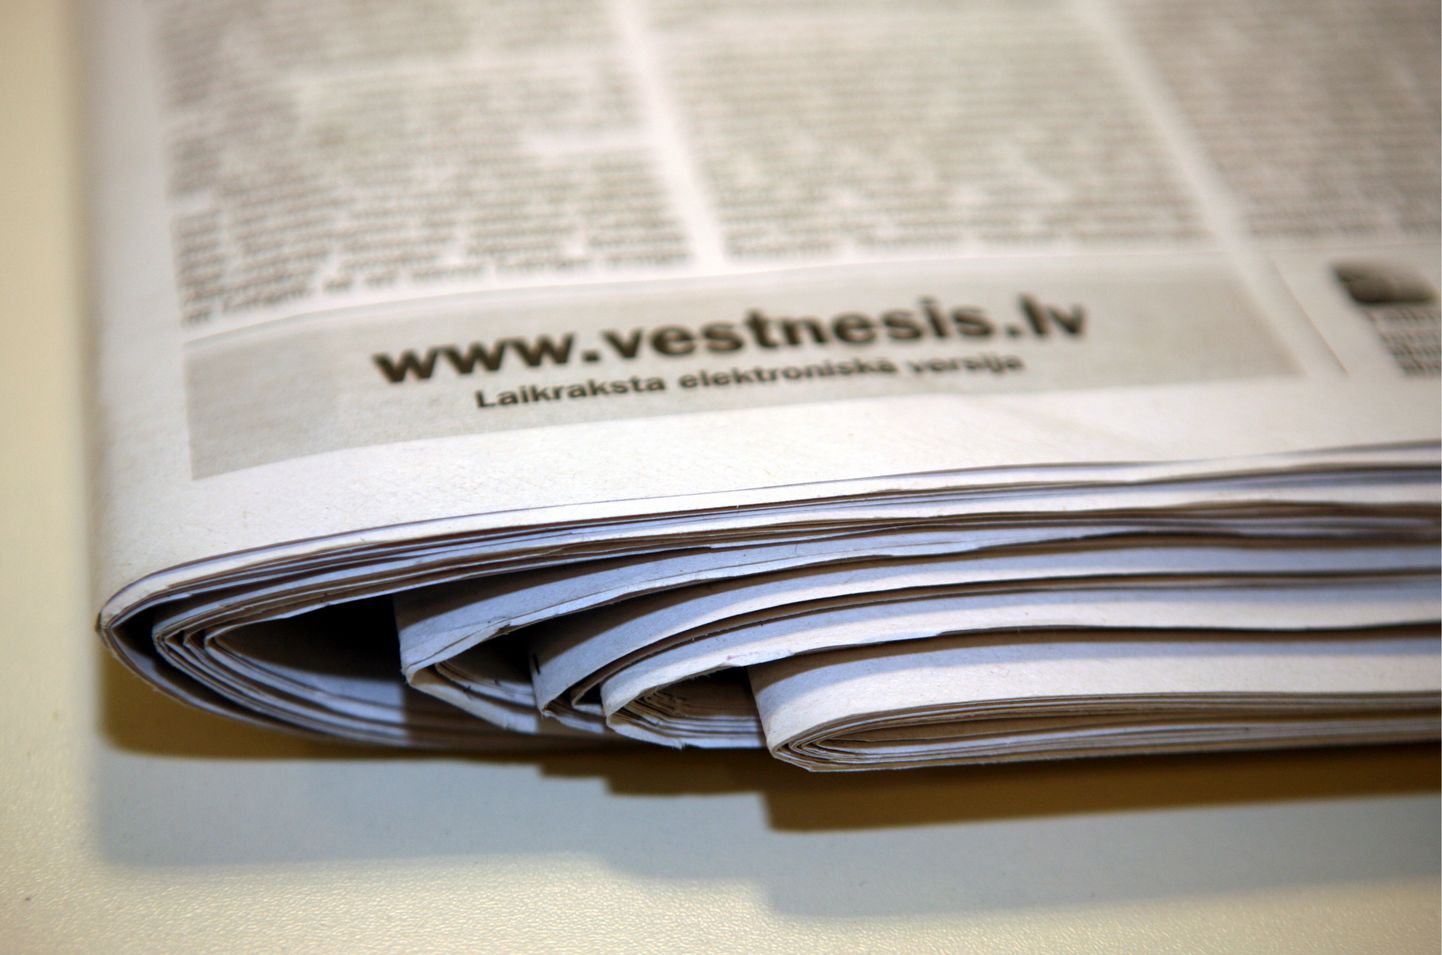 Oficiālā laikraksta "Latvijas Vēstnesis" 13. jūlija numurs, kurā publicēta Ārlietu ministrijas dienesta informācija - "Par Nolīguma par starptautisko [dzelzceļa] kravu satiksmi (SMGS) 2.pielikumu" - latviešu un krievu valodā, sasniedzis jaunus Latvijas avīžniecības rekordus - laikrakstā ir 640 lappuses.